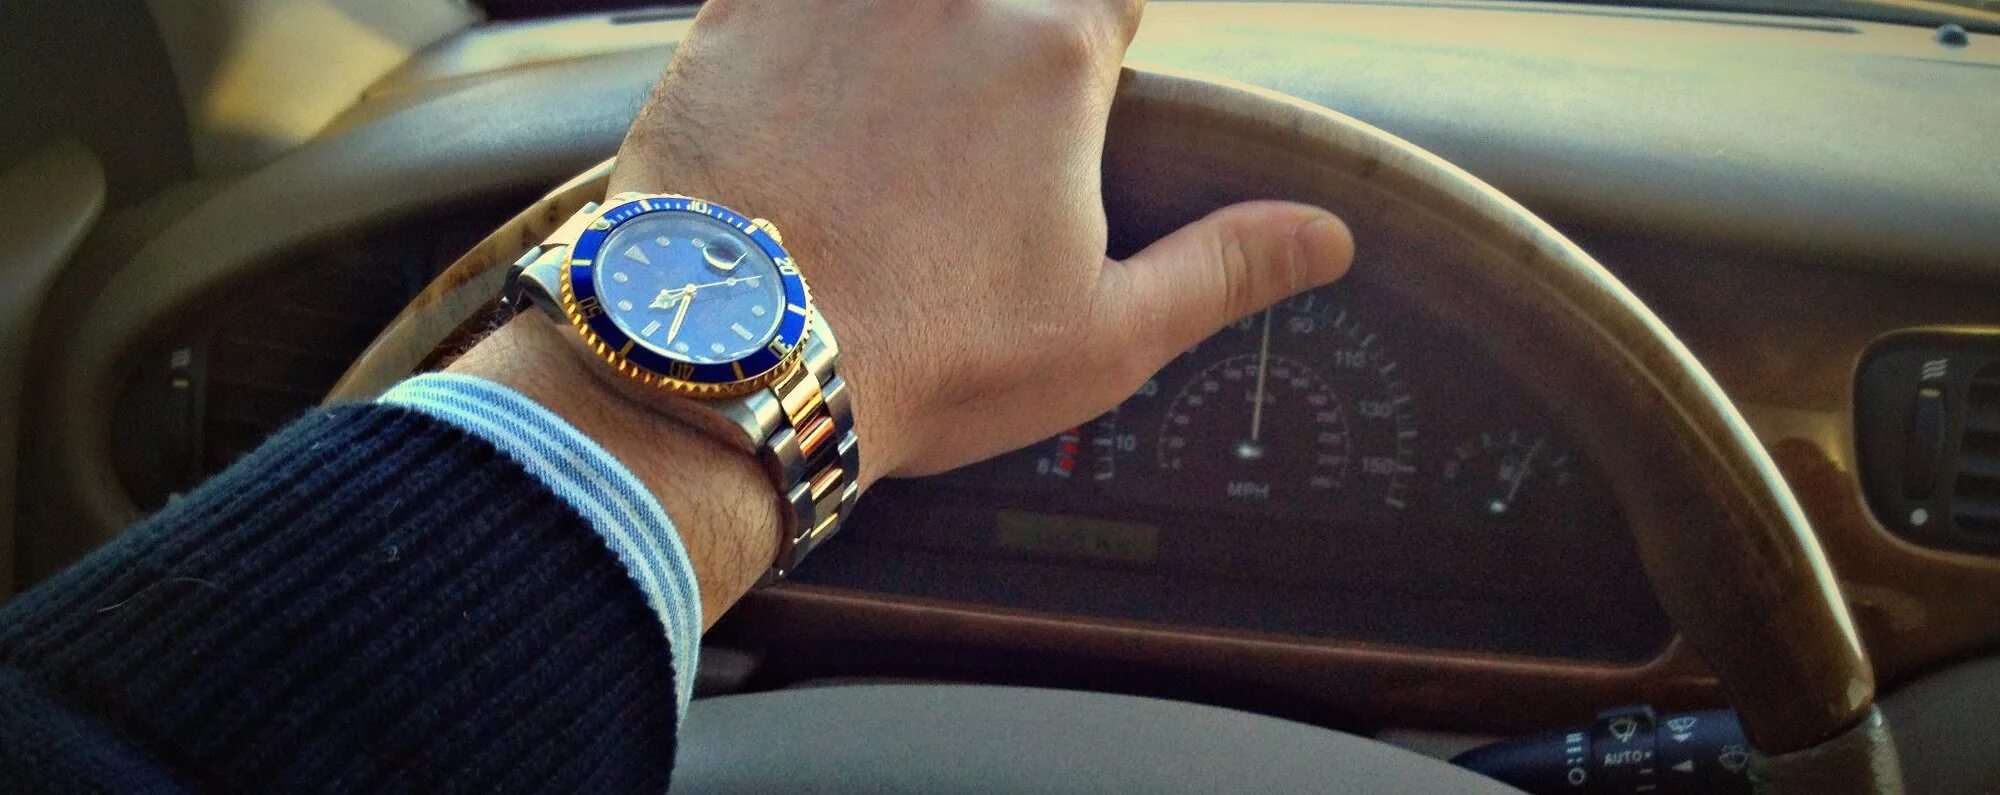 12 часов в дороге. Дорогие часы на руке. Часы на руке в авто. Rolex на руке с машиной.